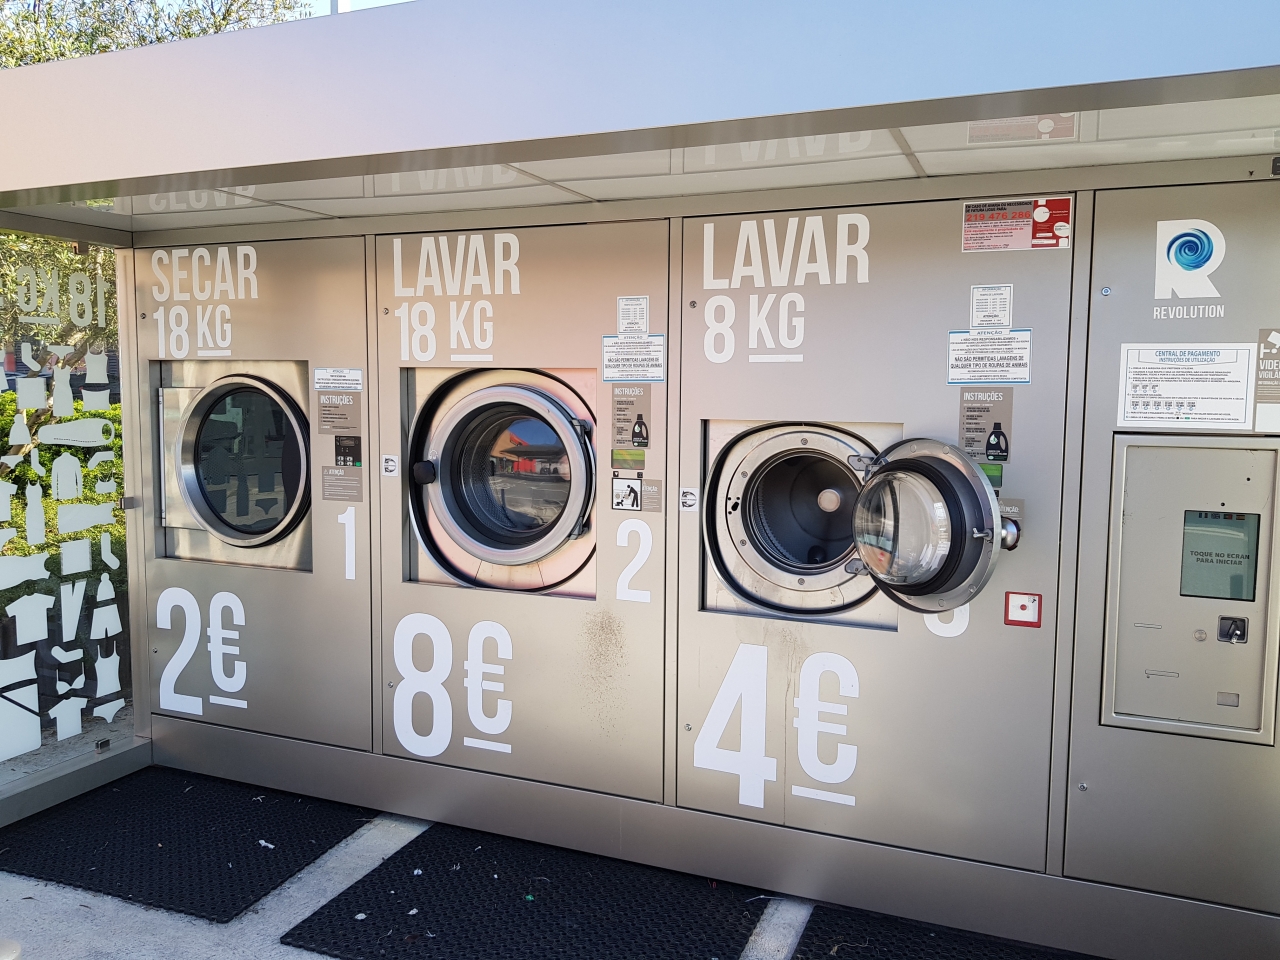 öffentliche Waschmasch. in Portugal